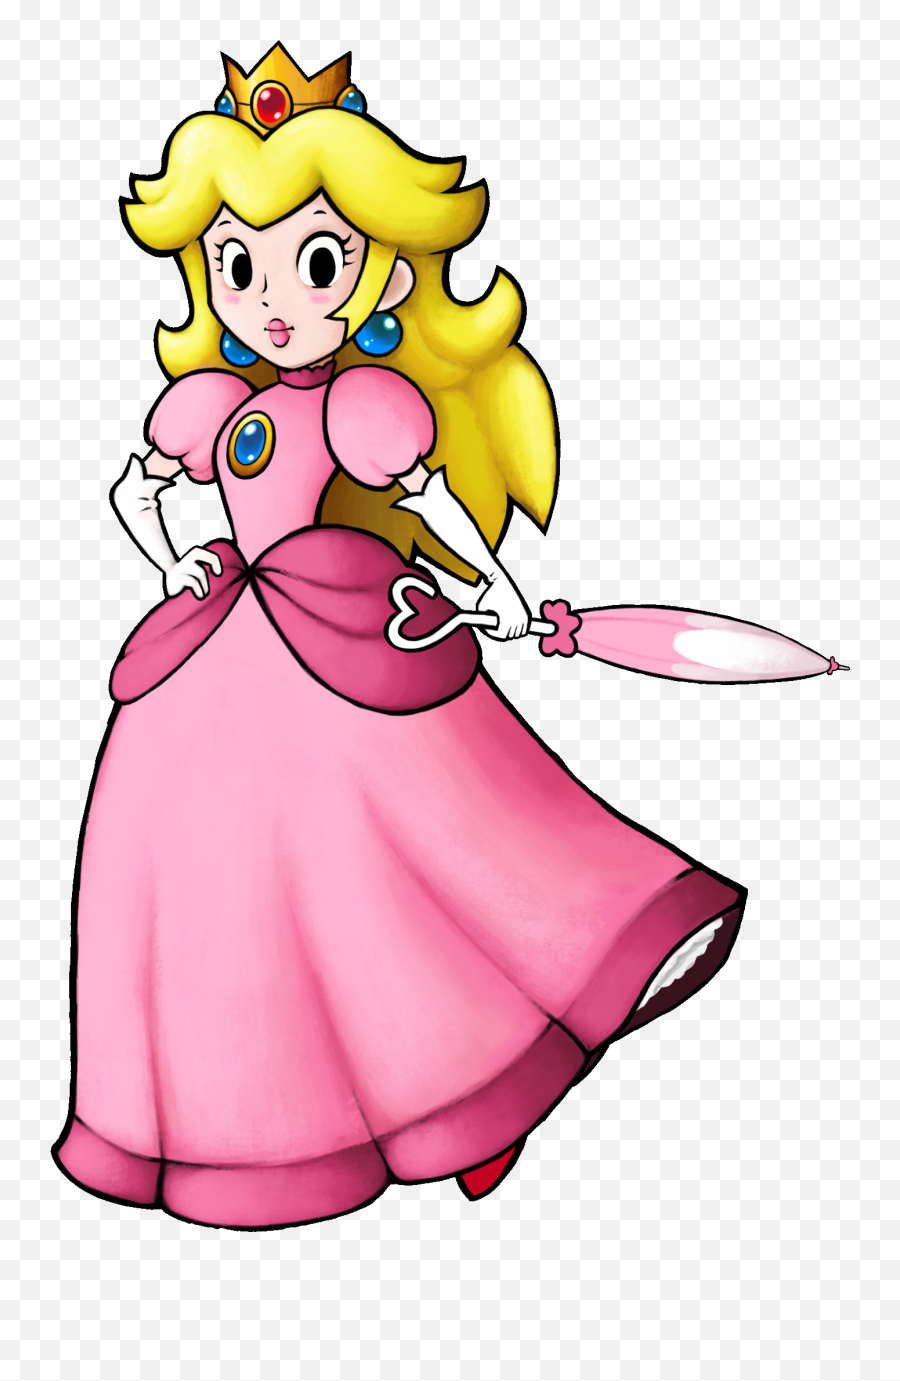 Princess Peach Clipart - Princess Peach Super Mario Clipart Emoji,Princess Peach Transparent